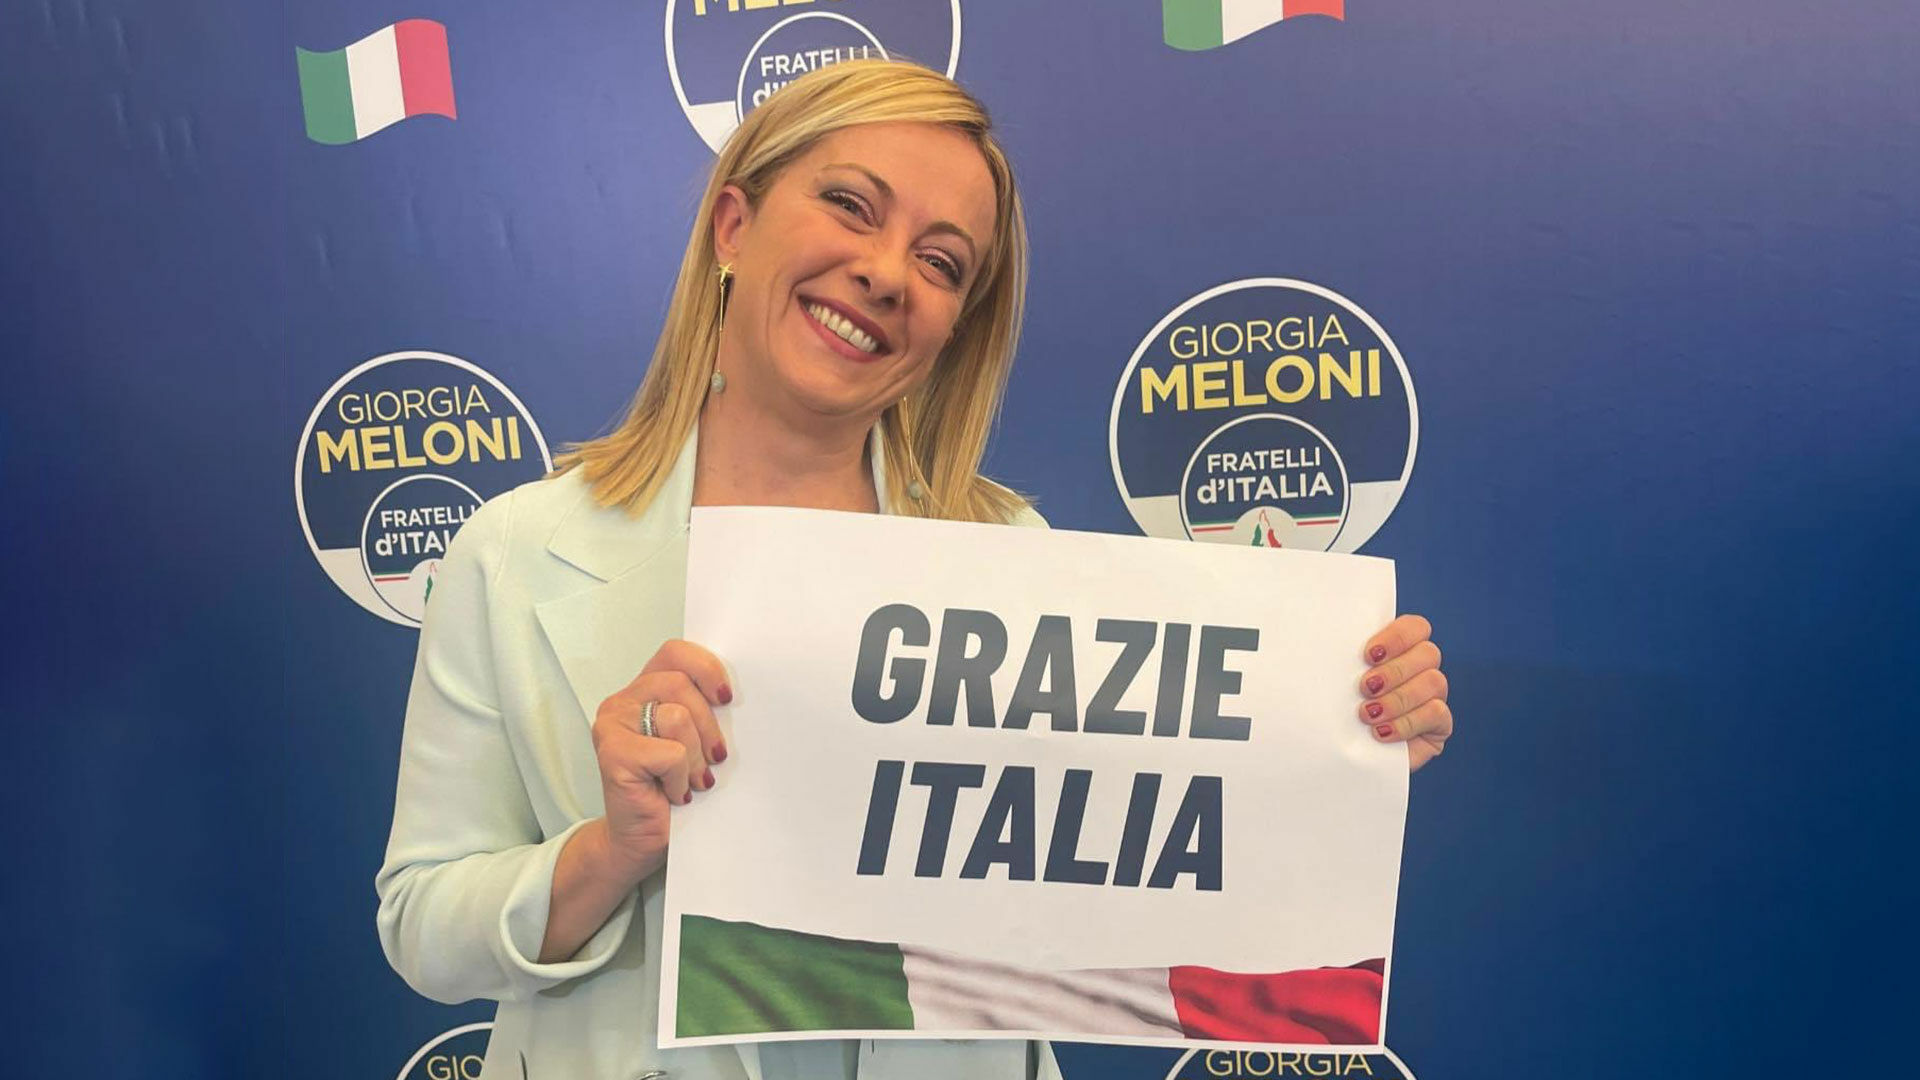 Reuters: впервые правительство Италии может возглавить женщина, Джорджия Мелони